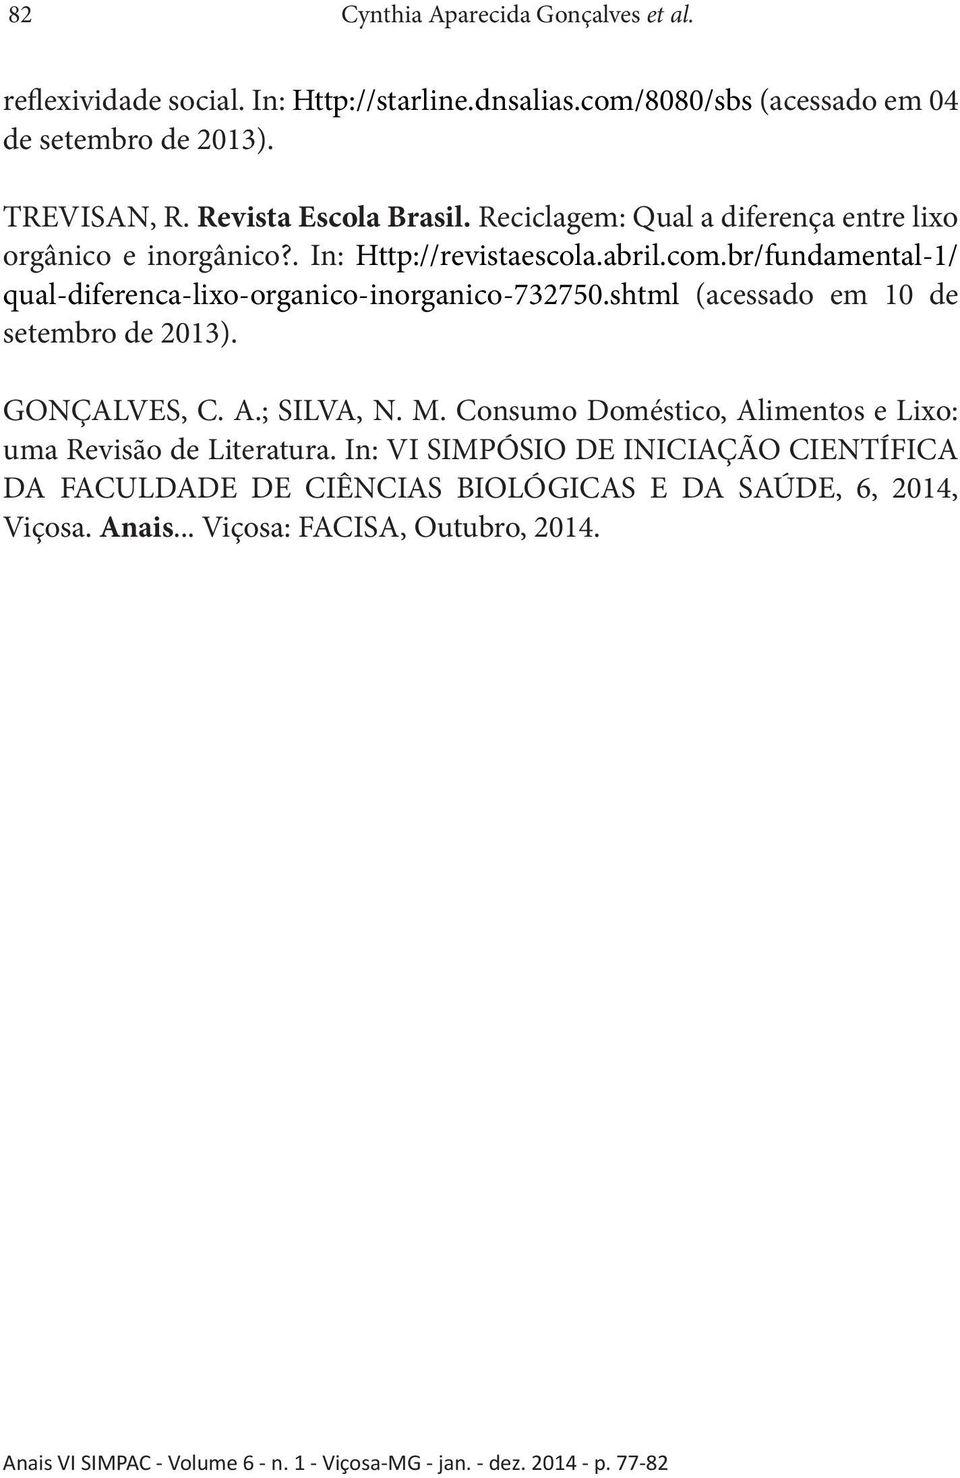 br/fundamental-1/ qual-diferenca-lixo-organico-inorganico-732750.shtml (acessado em 10 de setembro de 2013). GONÇALVES, C. A.; SILVA, N. M.